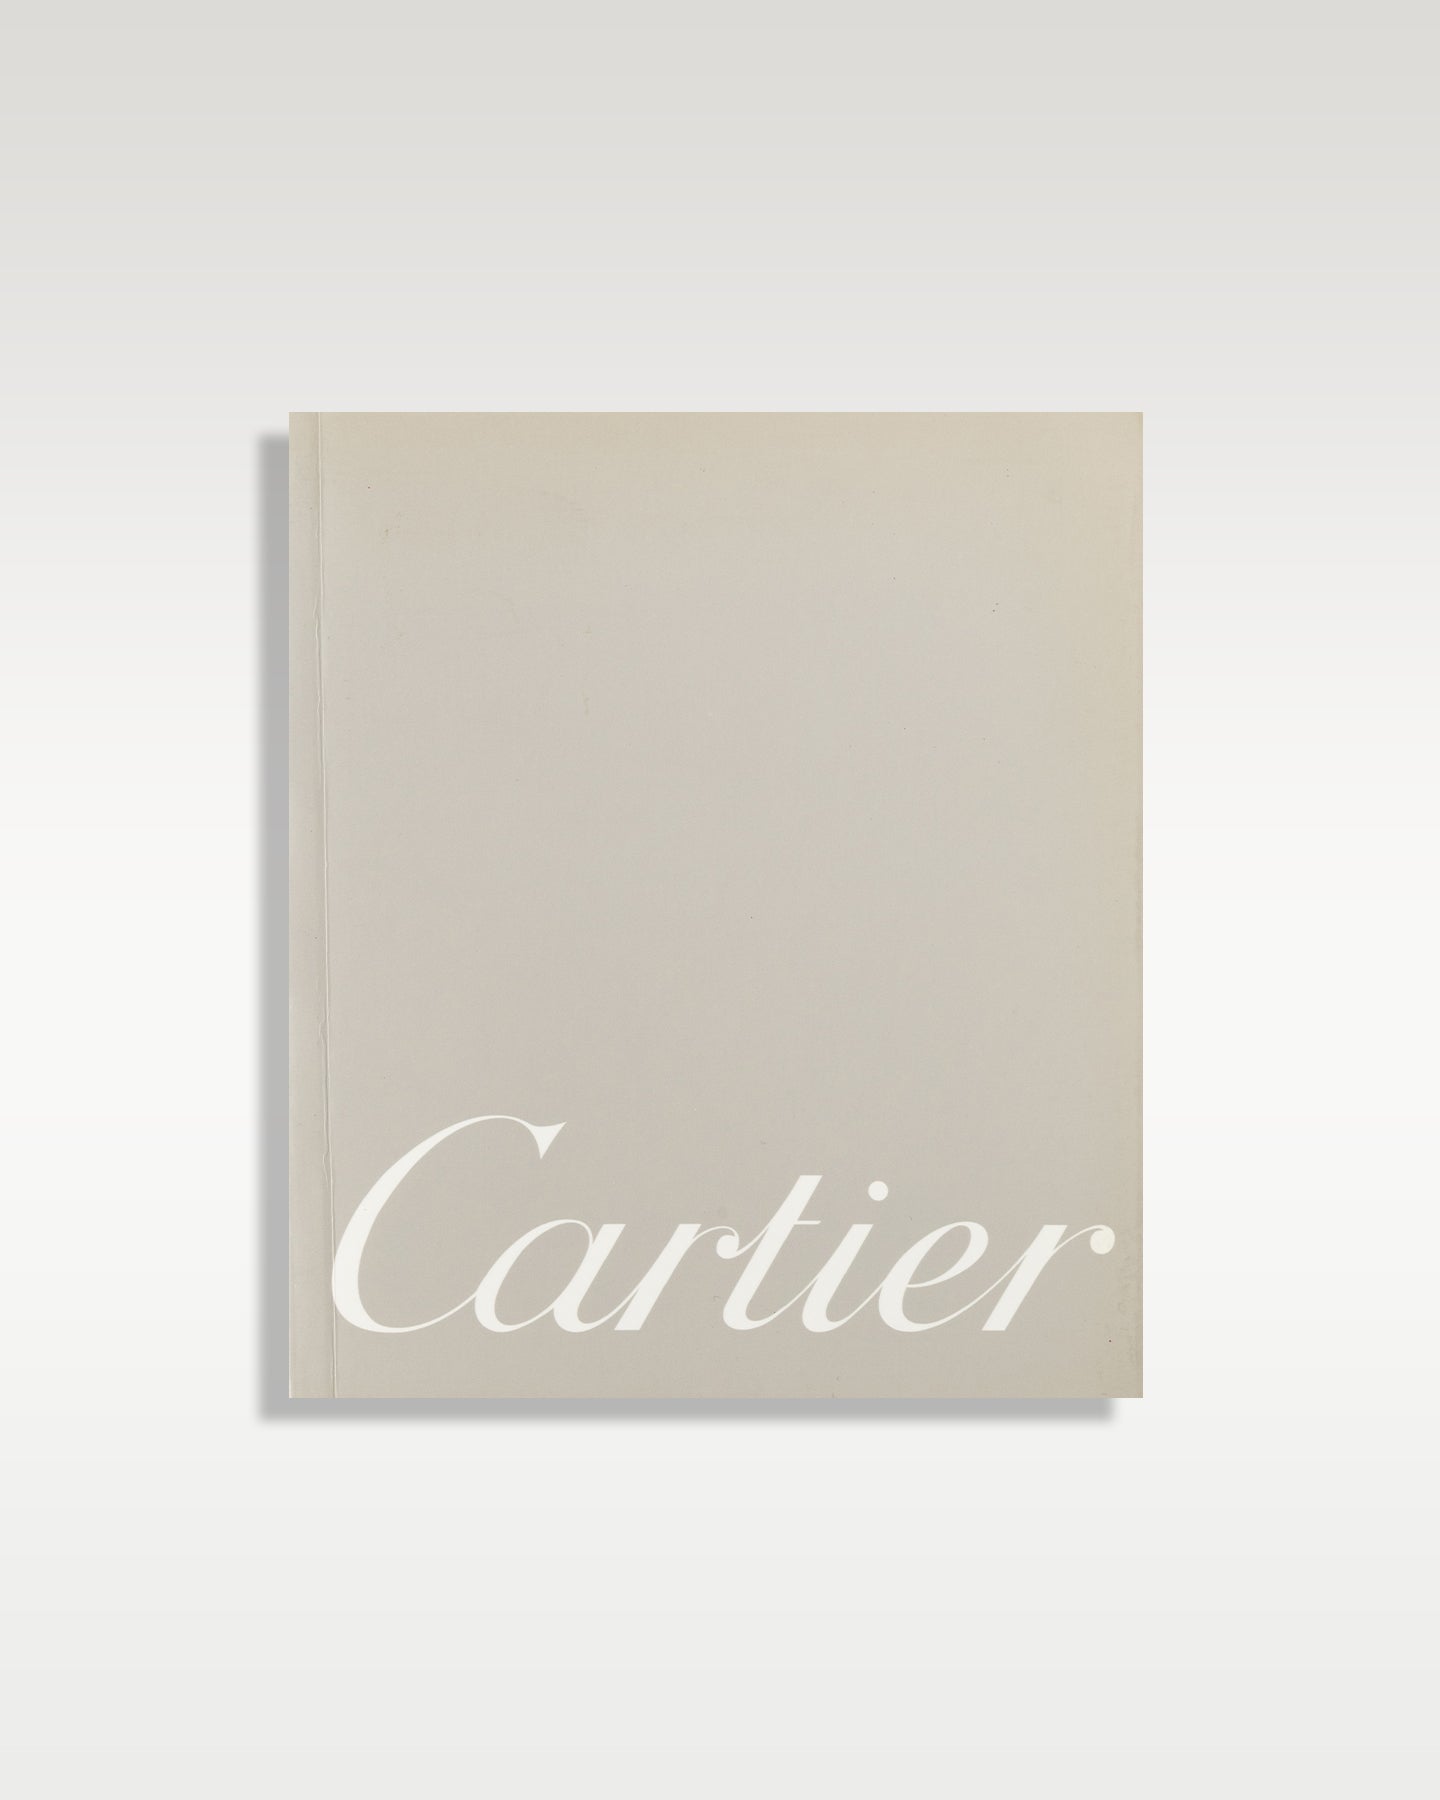 Cartier Santos 100 Flying Tourbillon W2020017